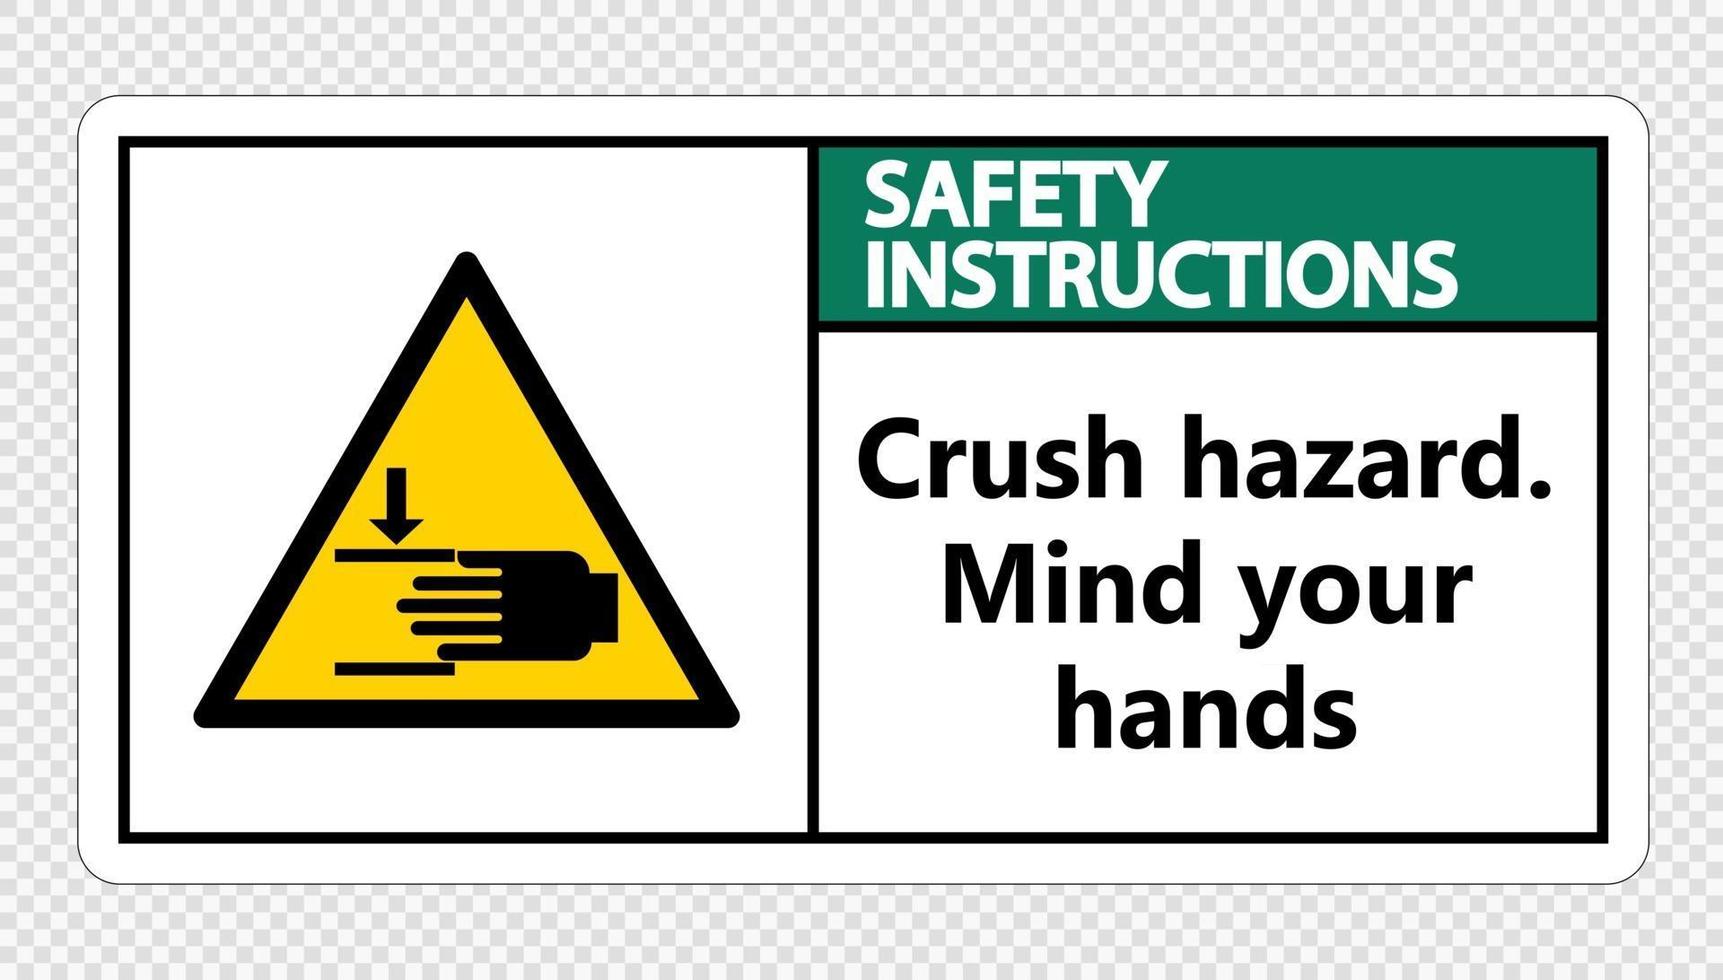 istruzioni di sicurezza schiacciare pericolo mente le tue mani segno su sfondo trasparente vettore